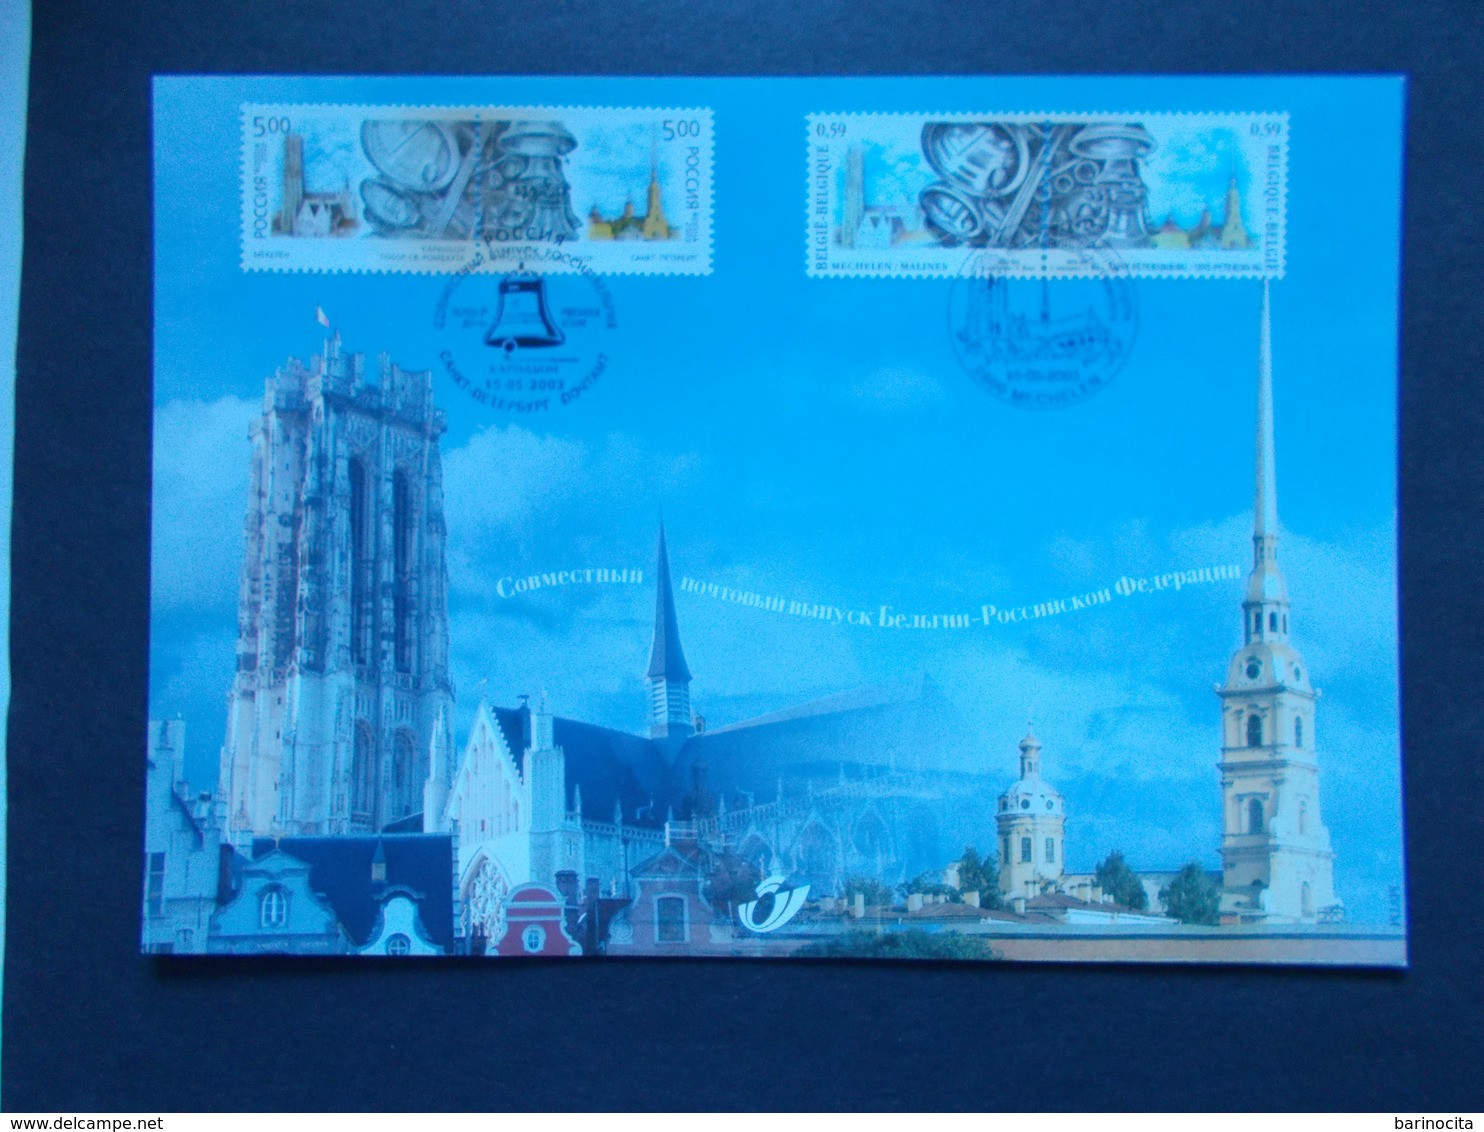 BELGIQUE -   N° 3170  HK  Année  2003   EMISSIONS  COMMUNES  RUSSIE    ( Voir Photo ) 68 - Cartoline Commemorative - Emissioni Congiunte [HK]